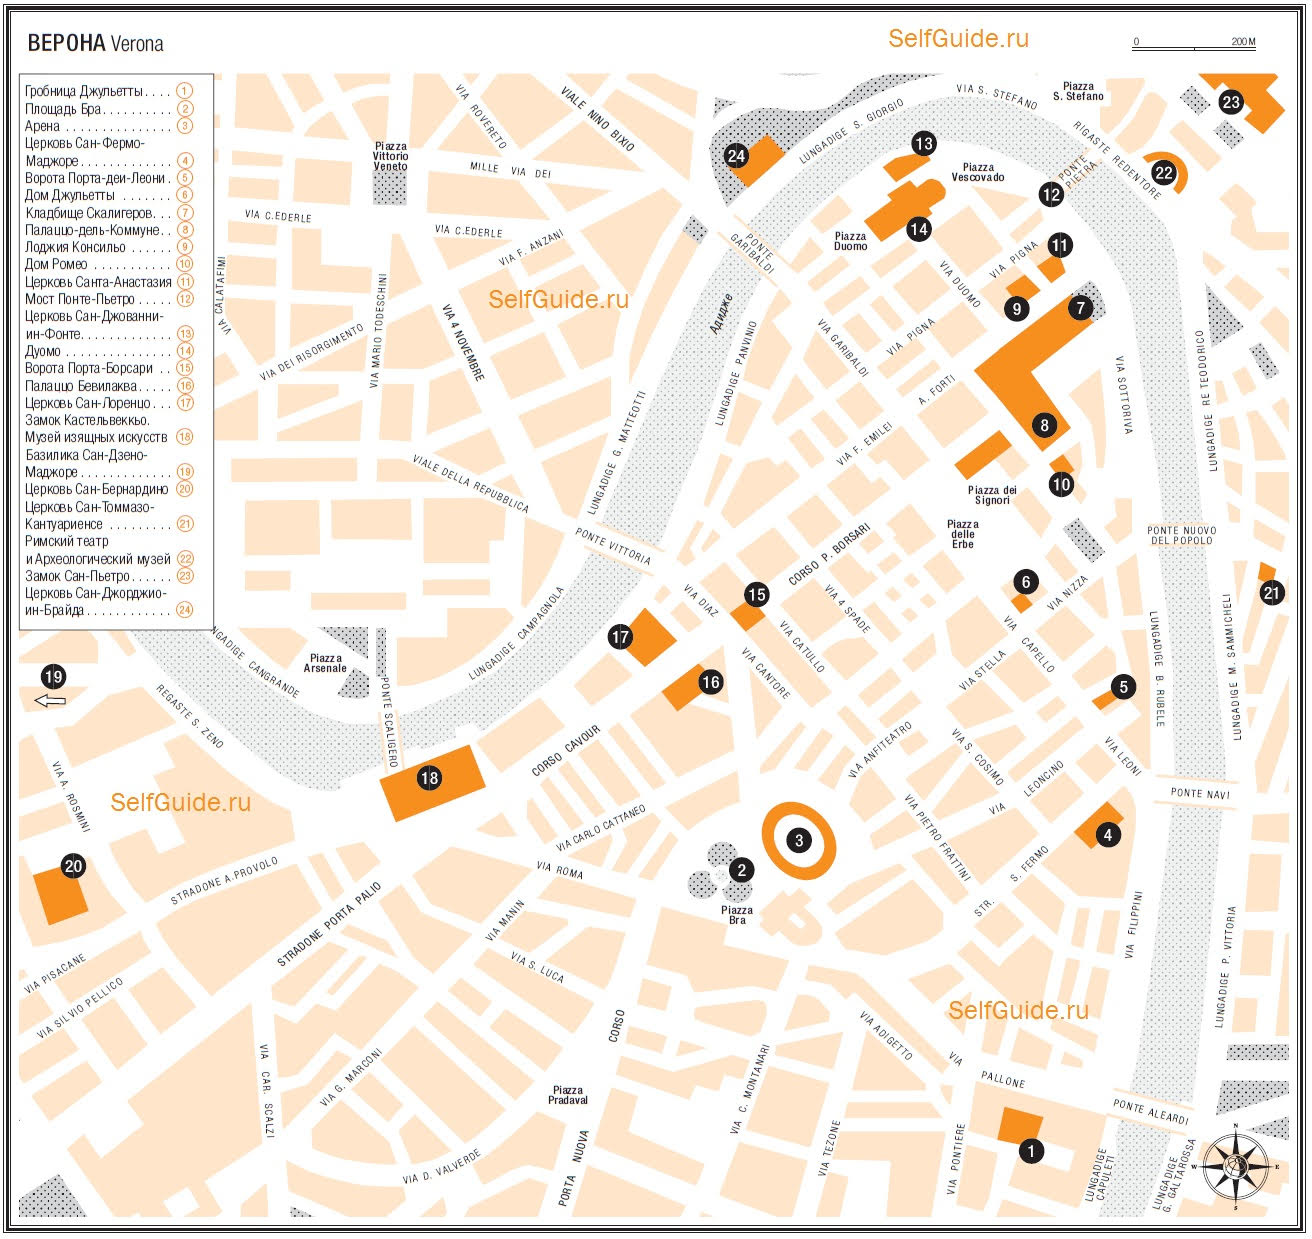 Туристический маршрут по Вероне - карта Вероны - достопримечательности Вероны на карте